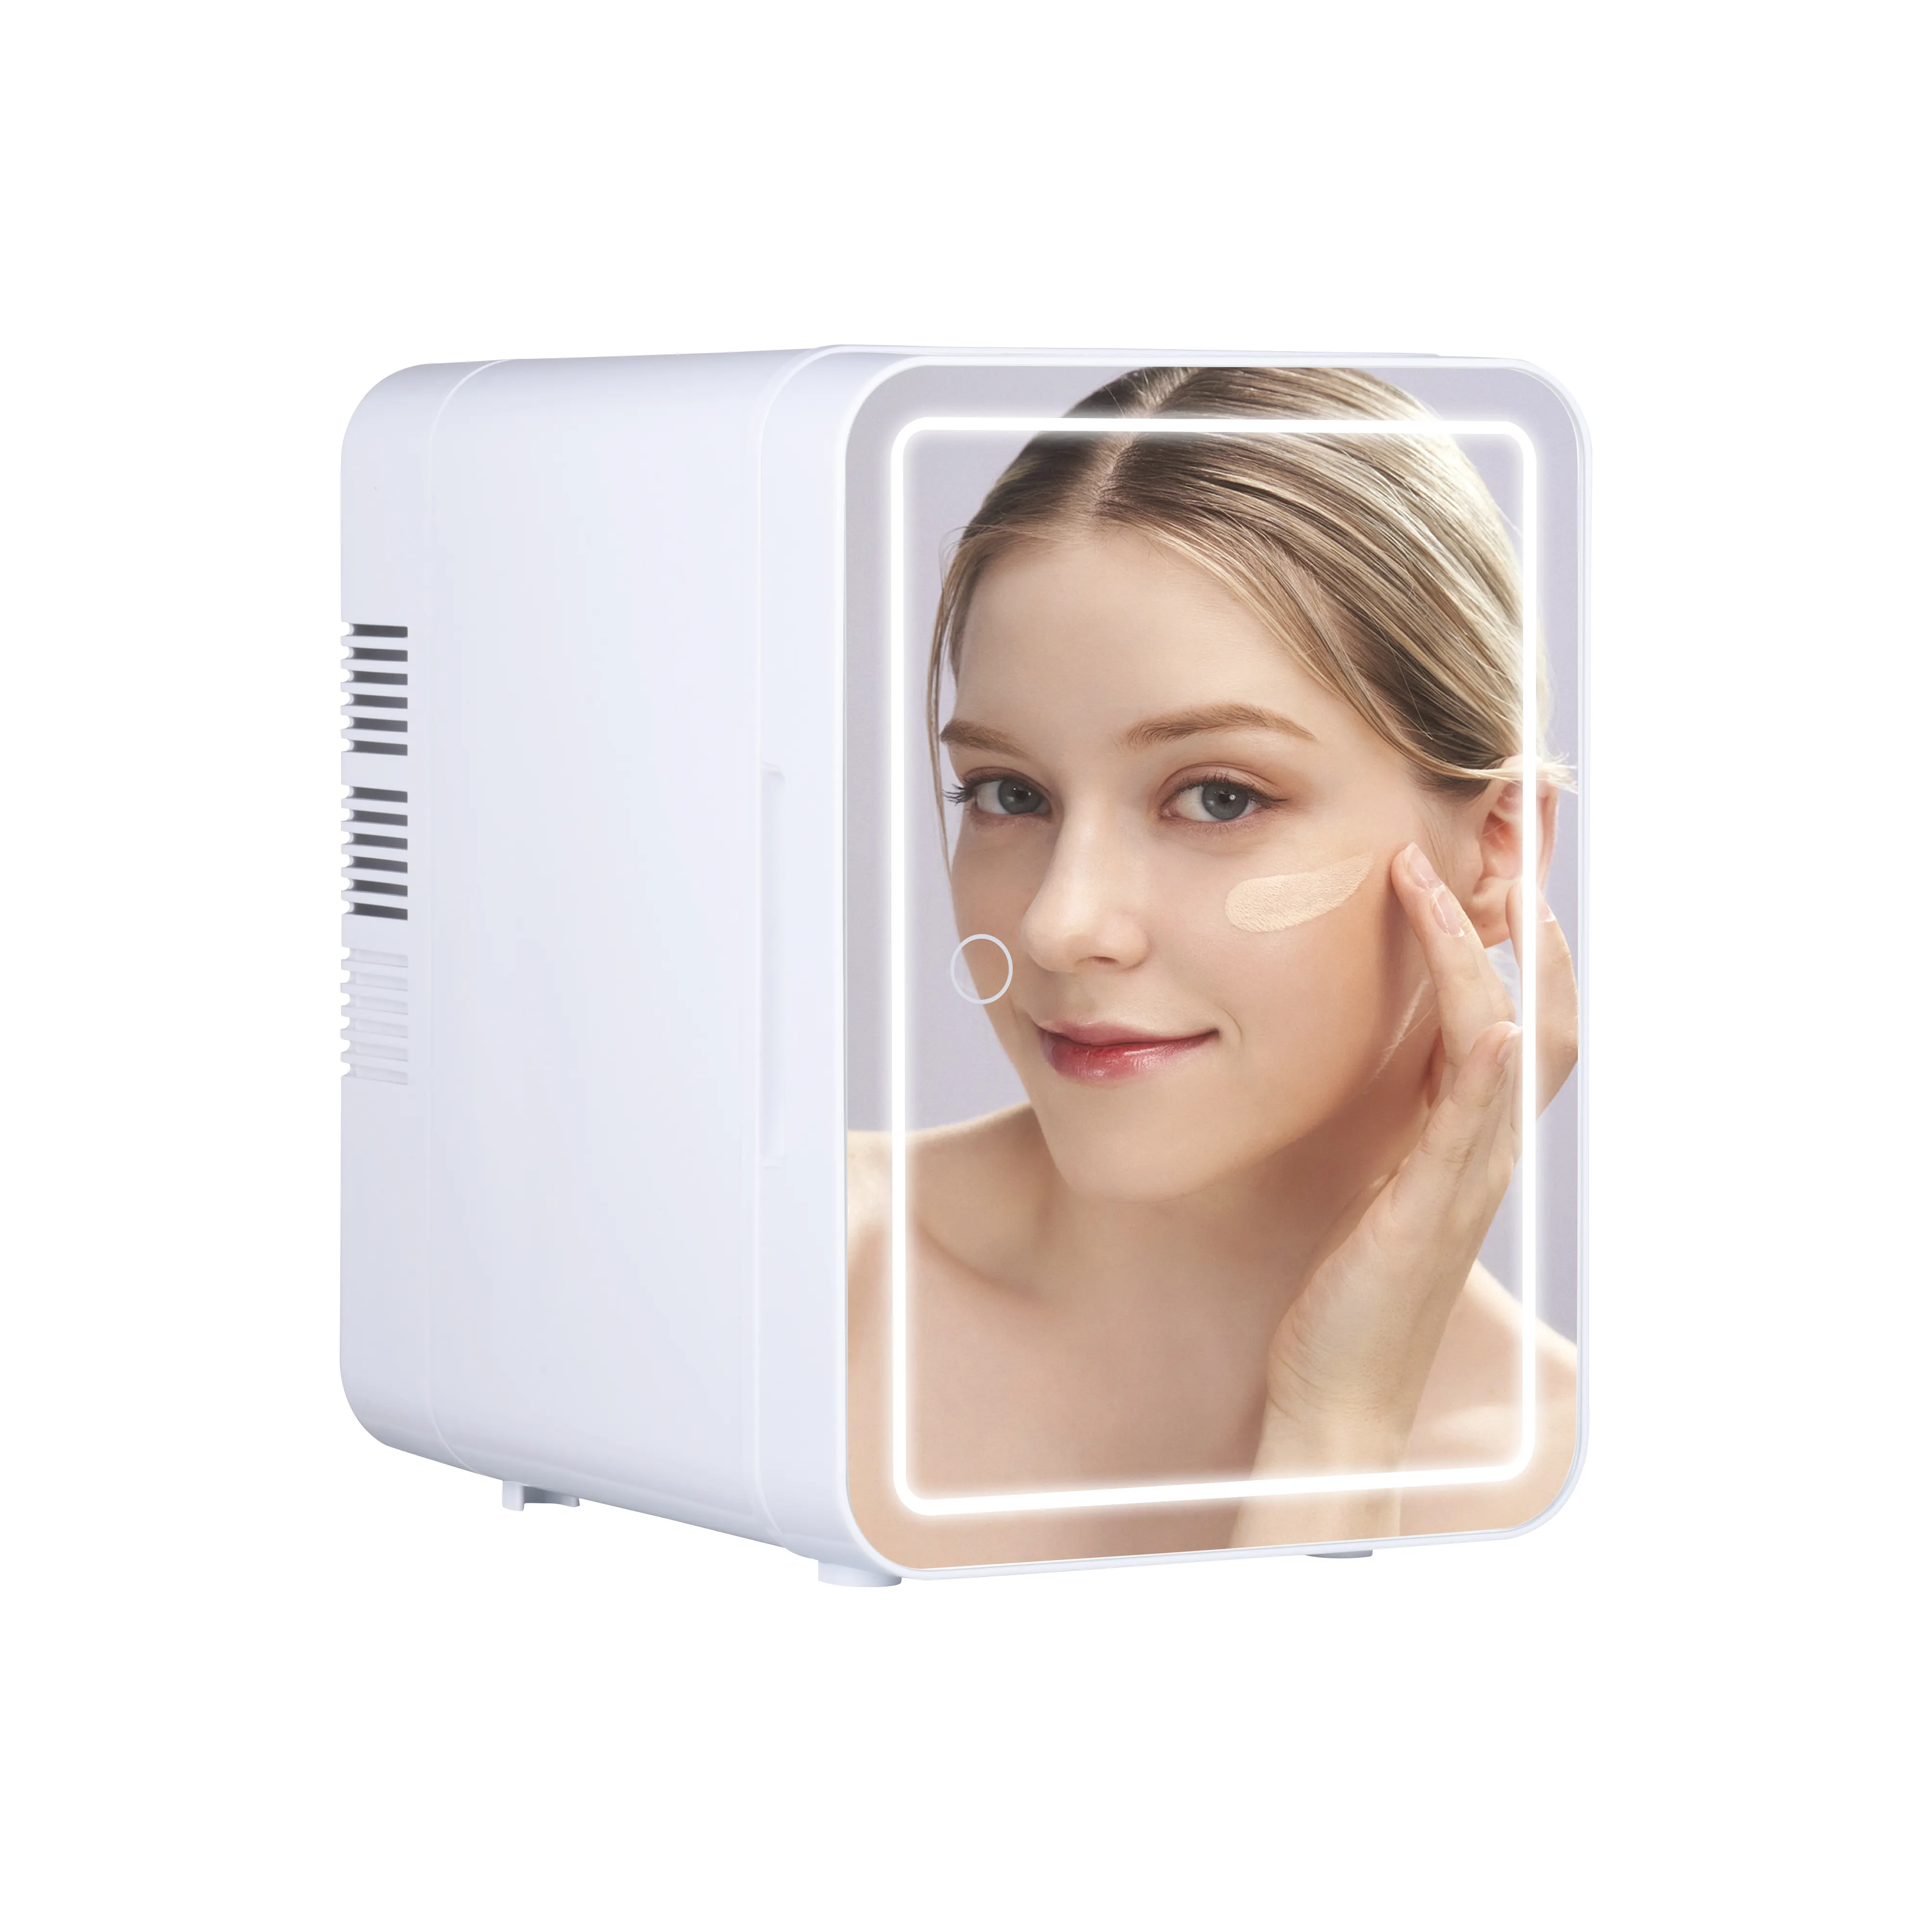 4 Liter Schönheits-Hautpflege-Kühlschrank Kosmetikkühlschrank tragbarer Mini-Kühlschrank mit LED-Beleuchtung